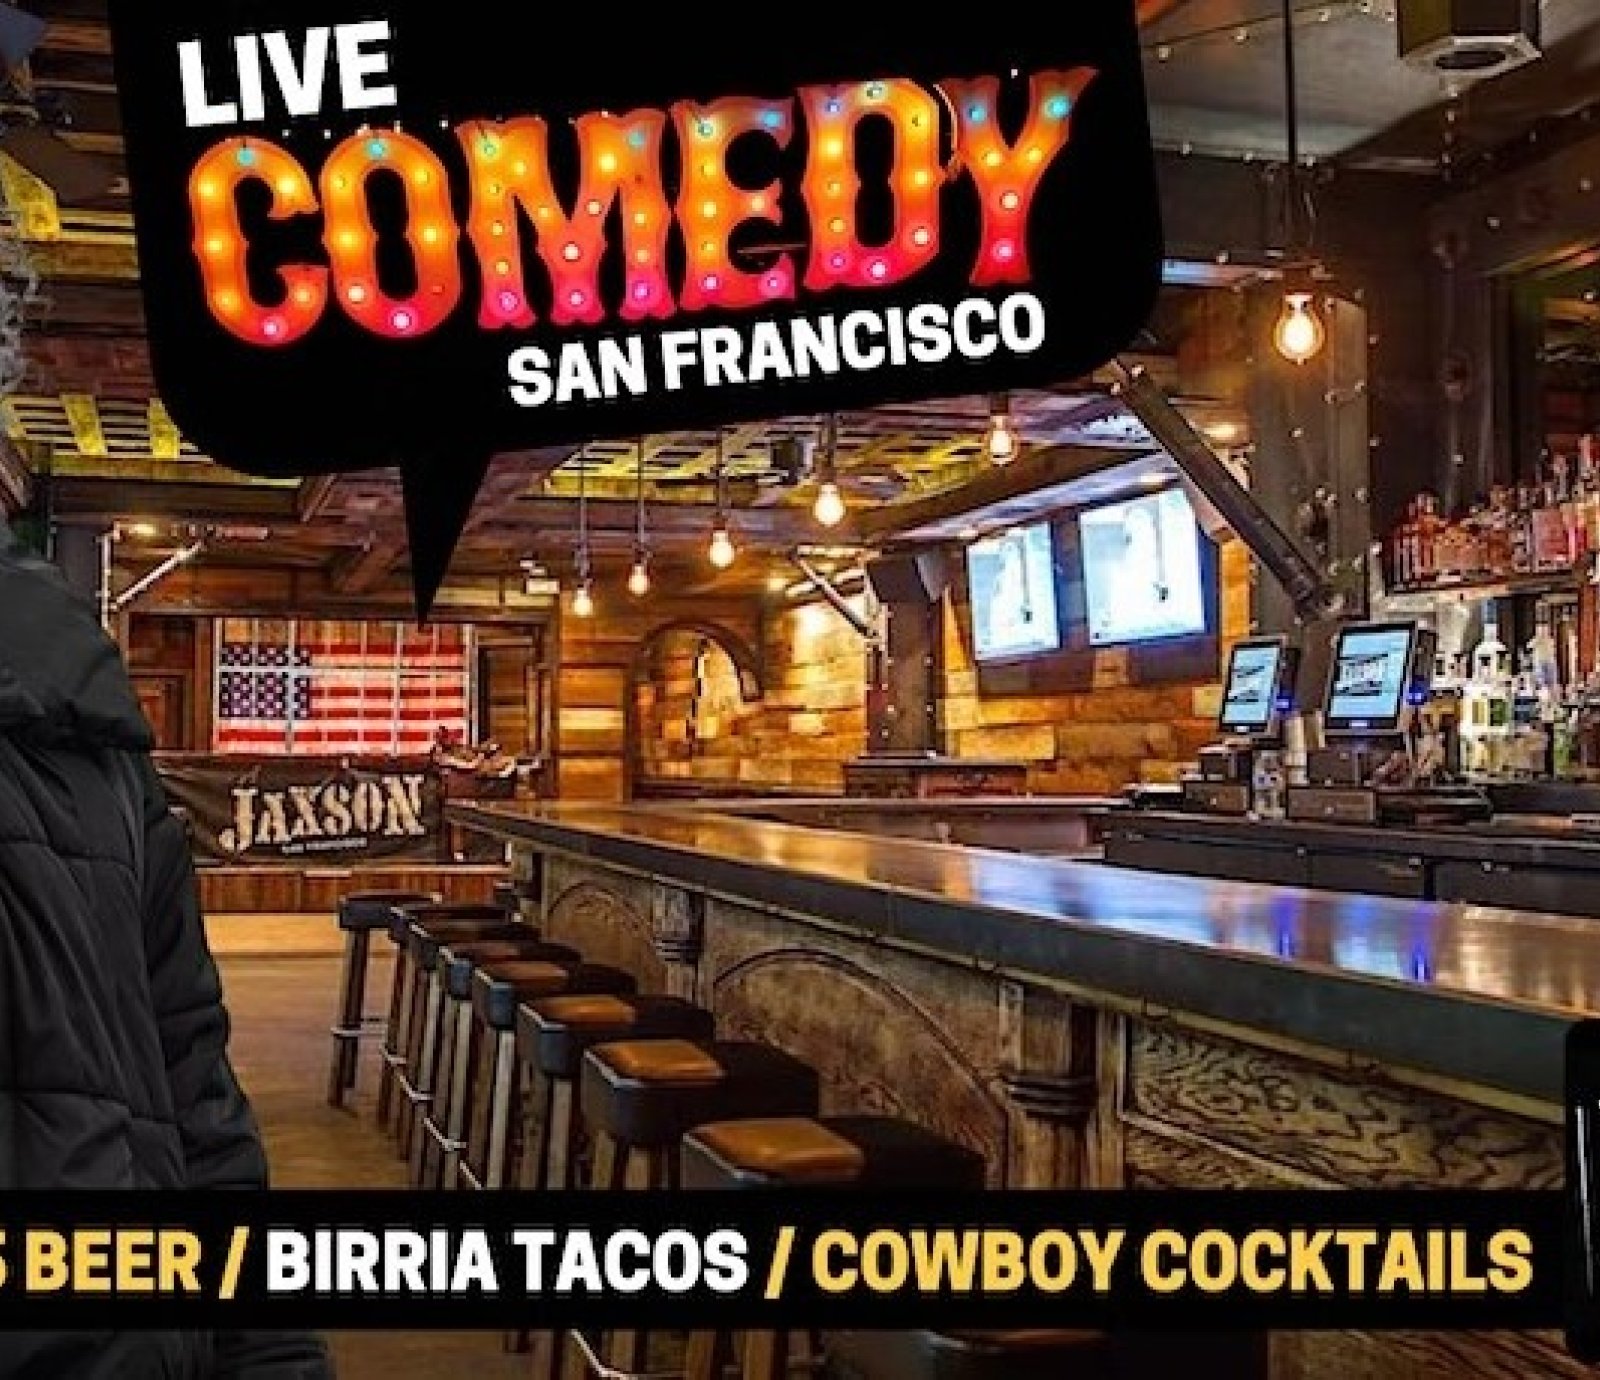 San Francisco "HellaFunny" Comedy Night